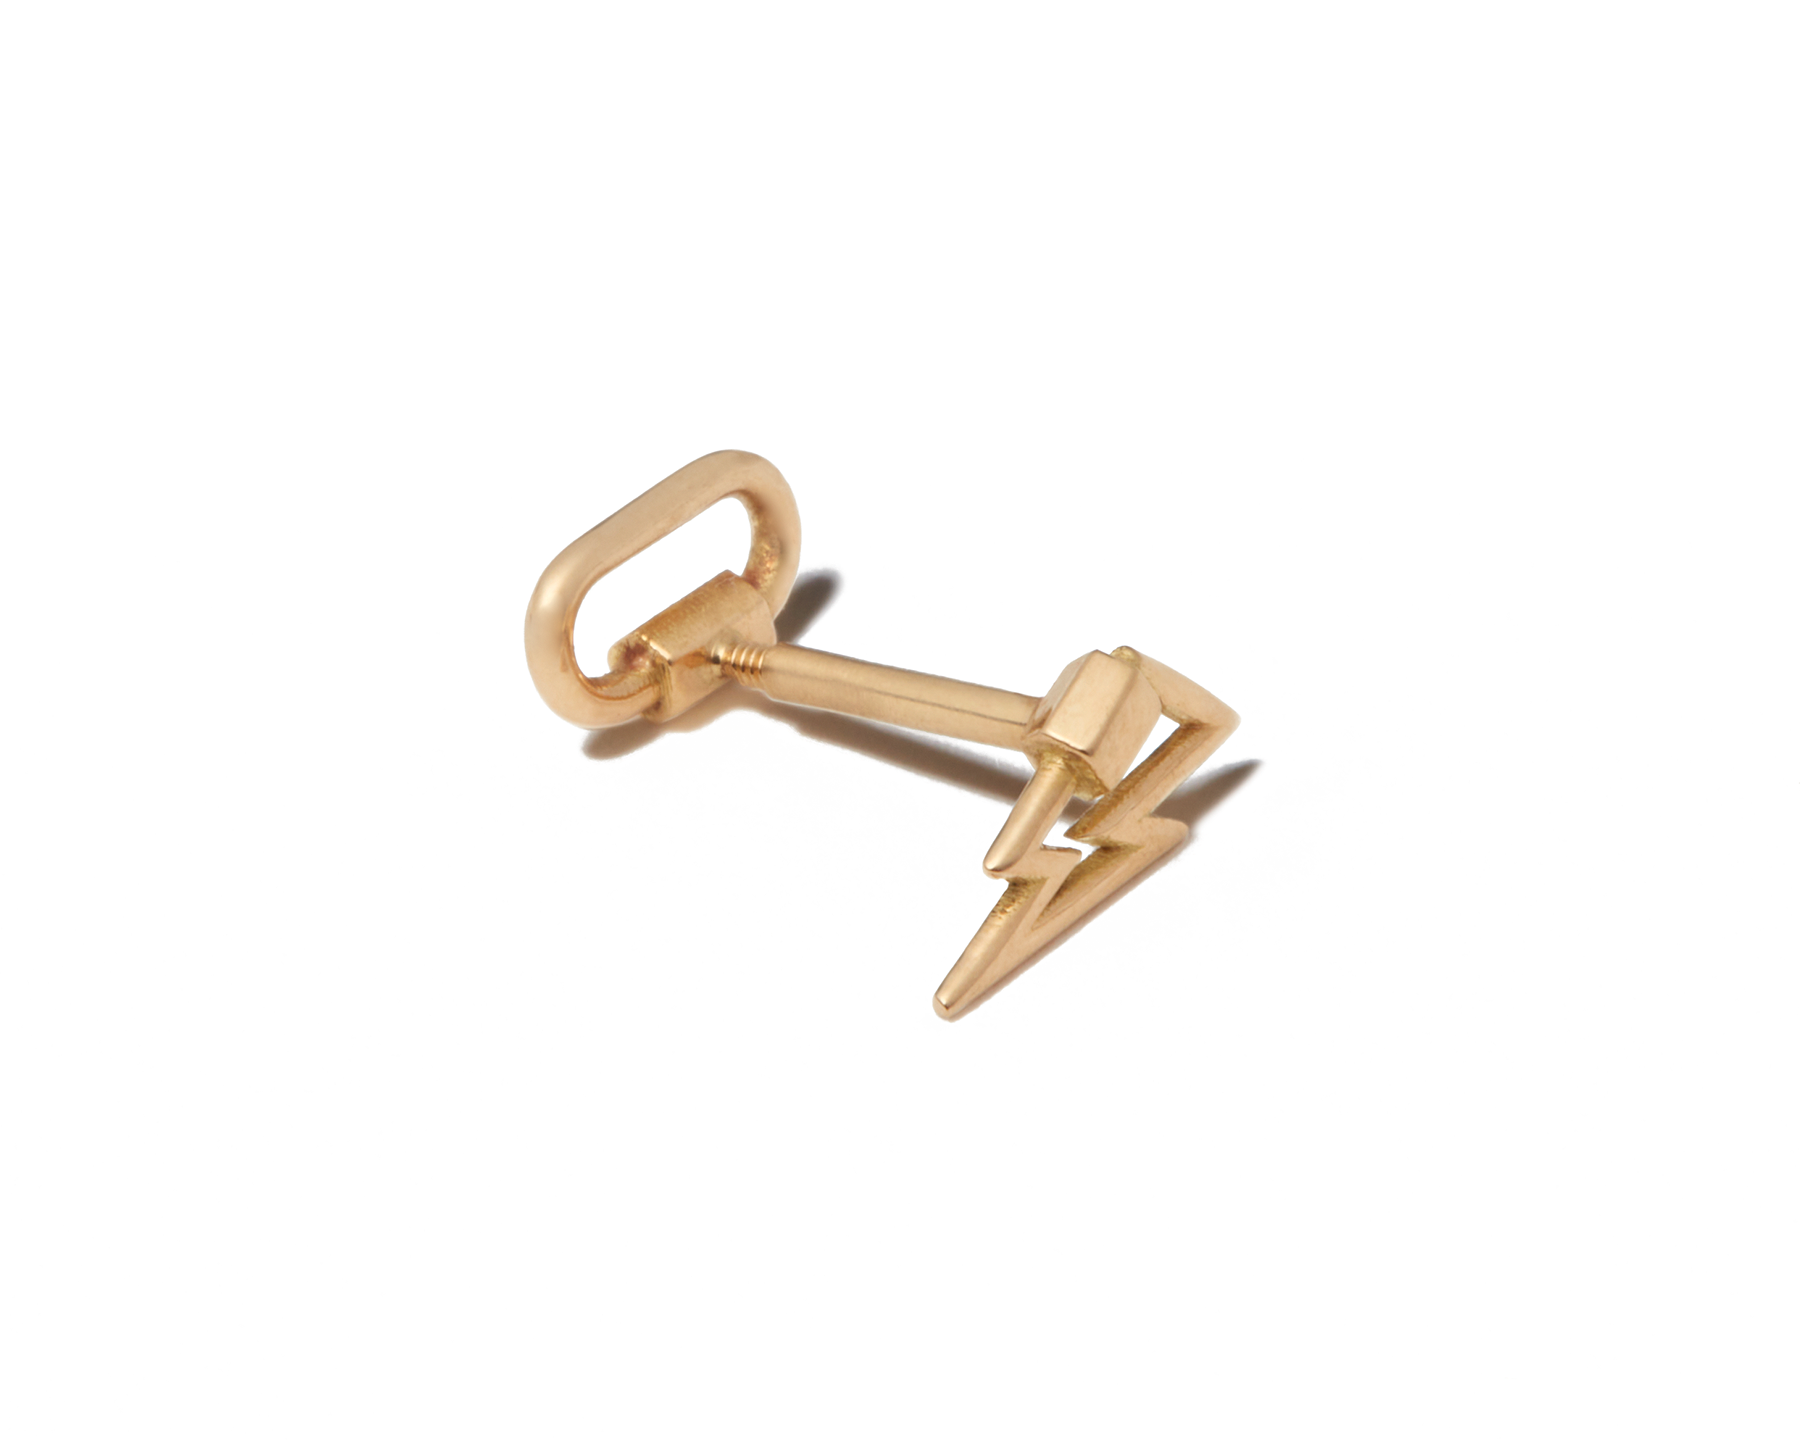 Lockette: Gold Lock Earring Studs